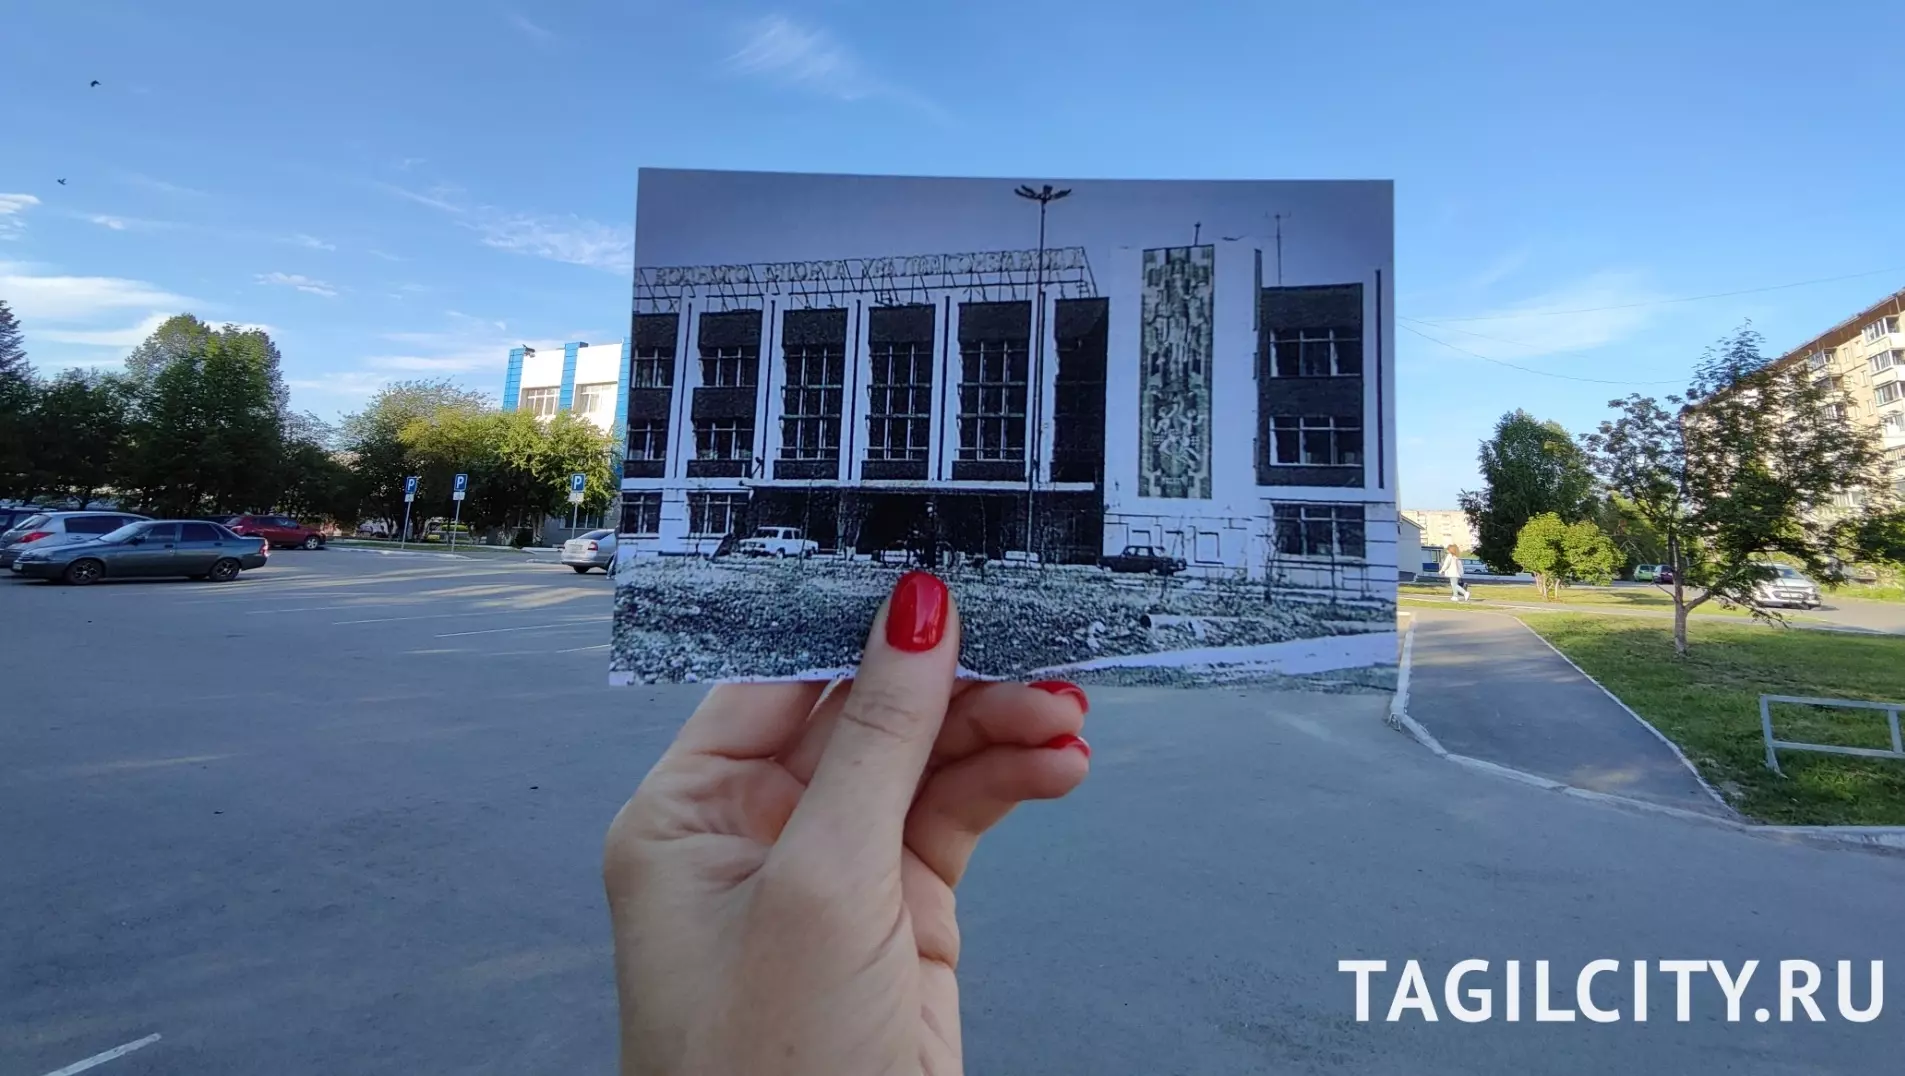 Баня, бассейн, больницы и другие узнаваемые здания Вагонки: фотографии старого Тагила